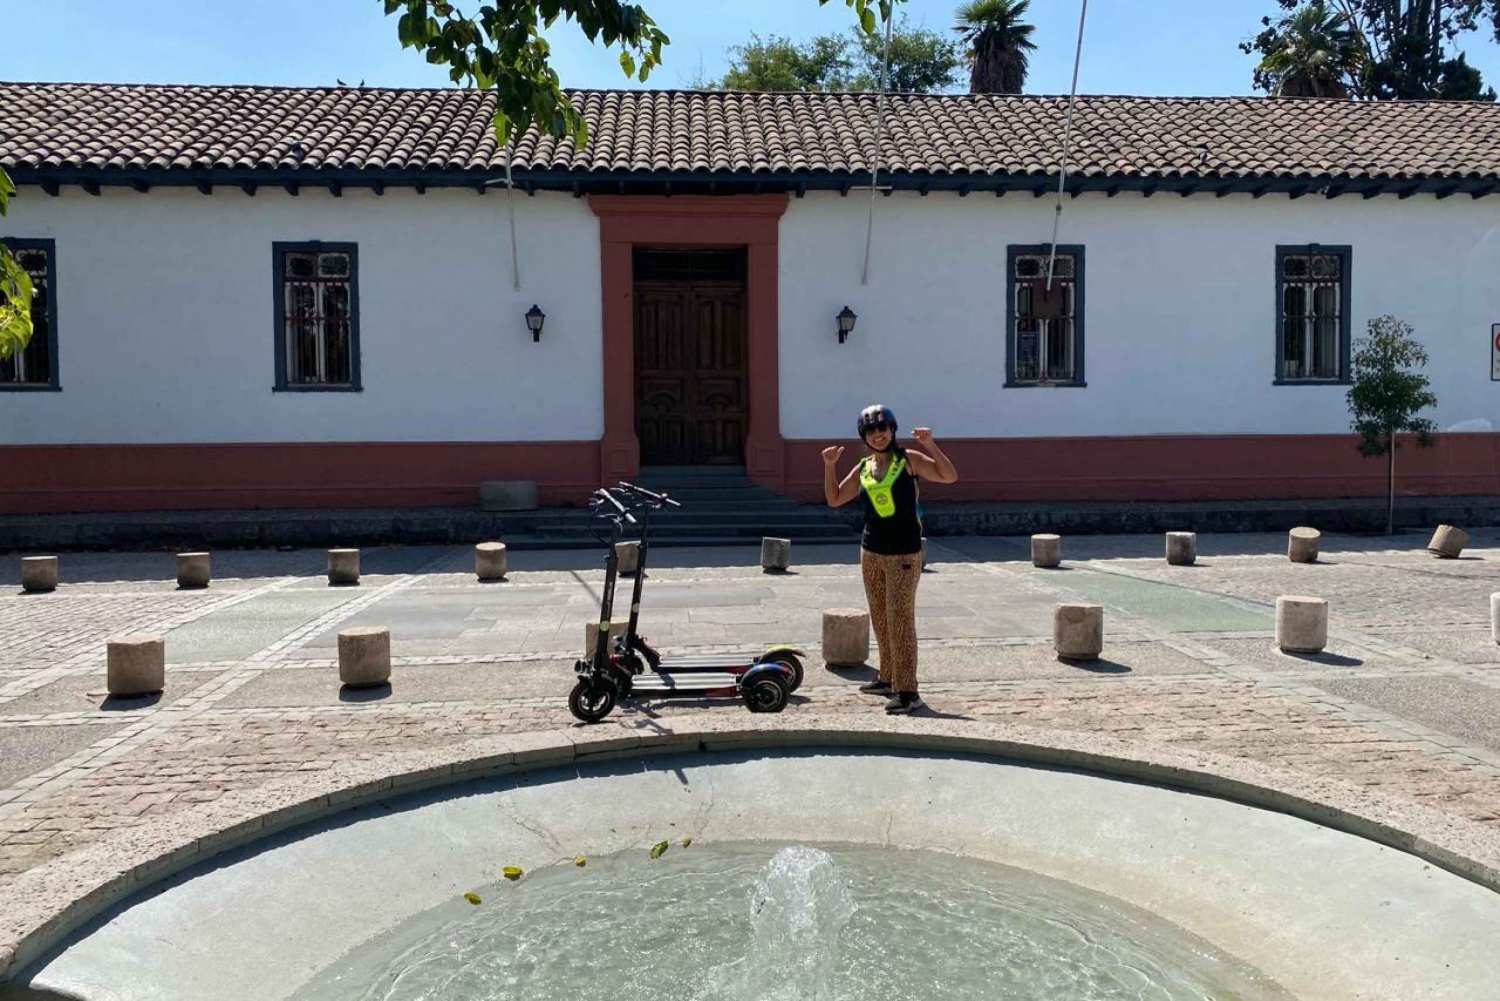 Santiago op een elektrische scooter. Stad en natuur